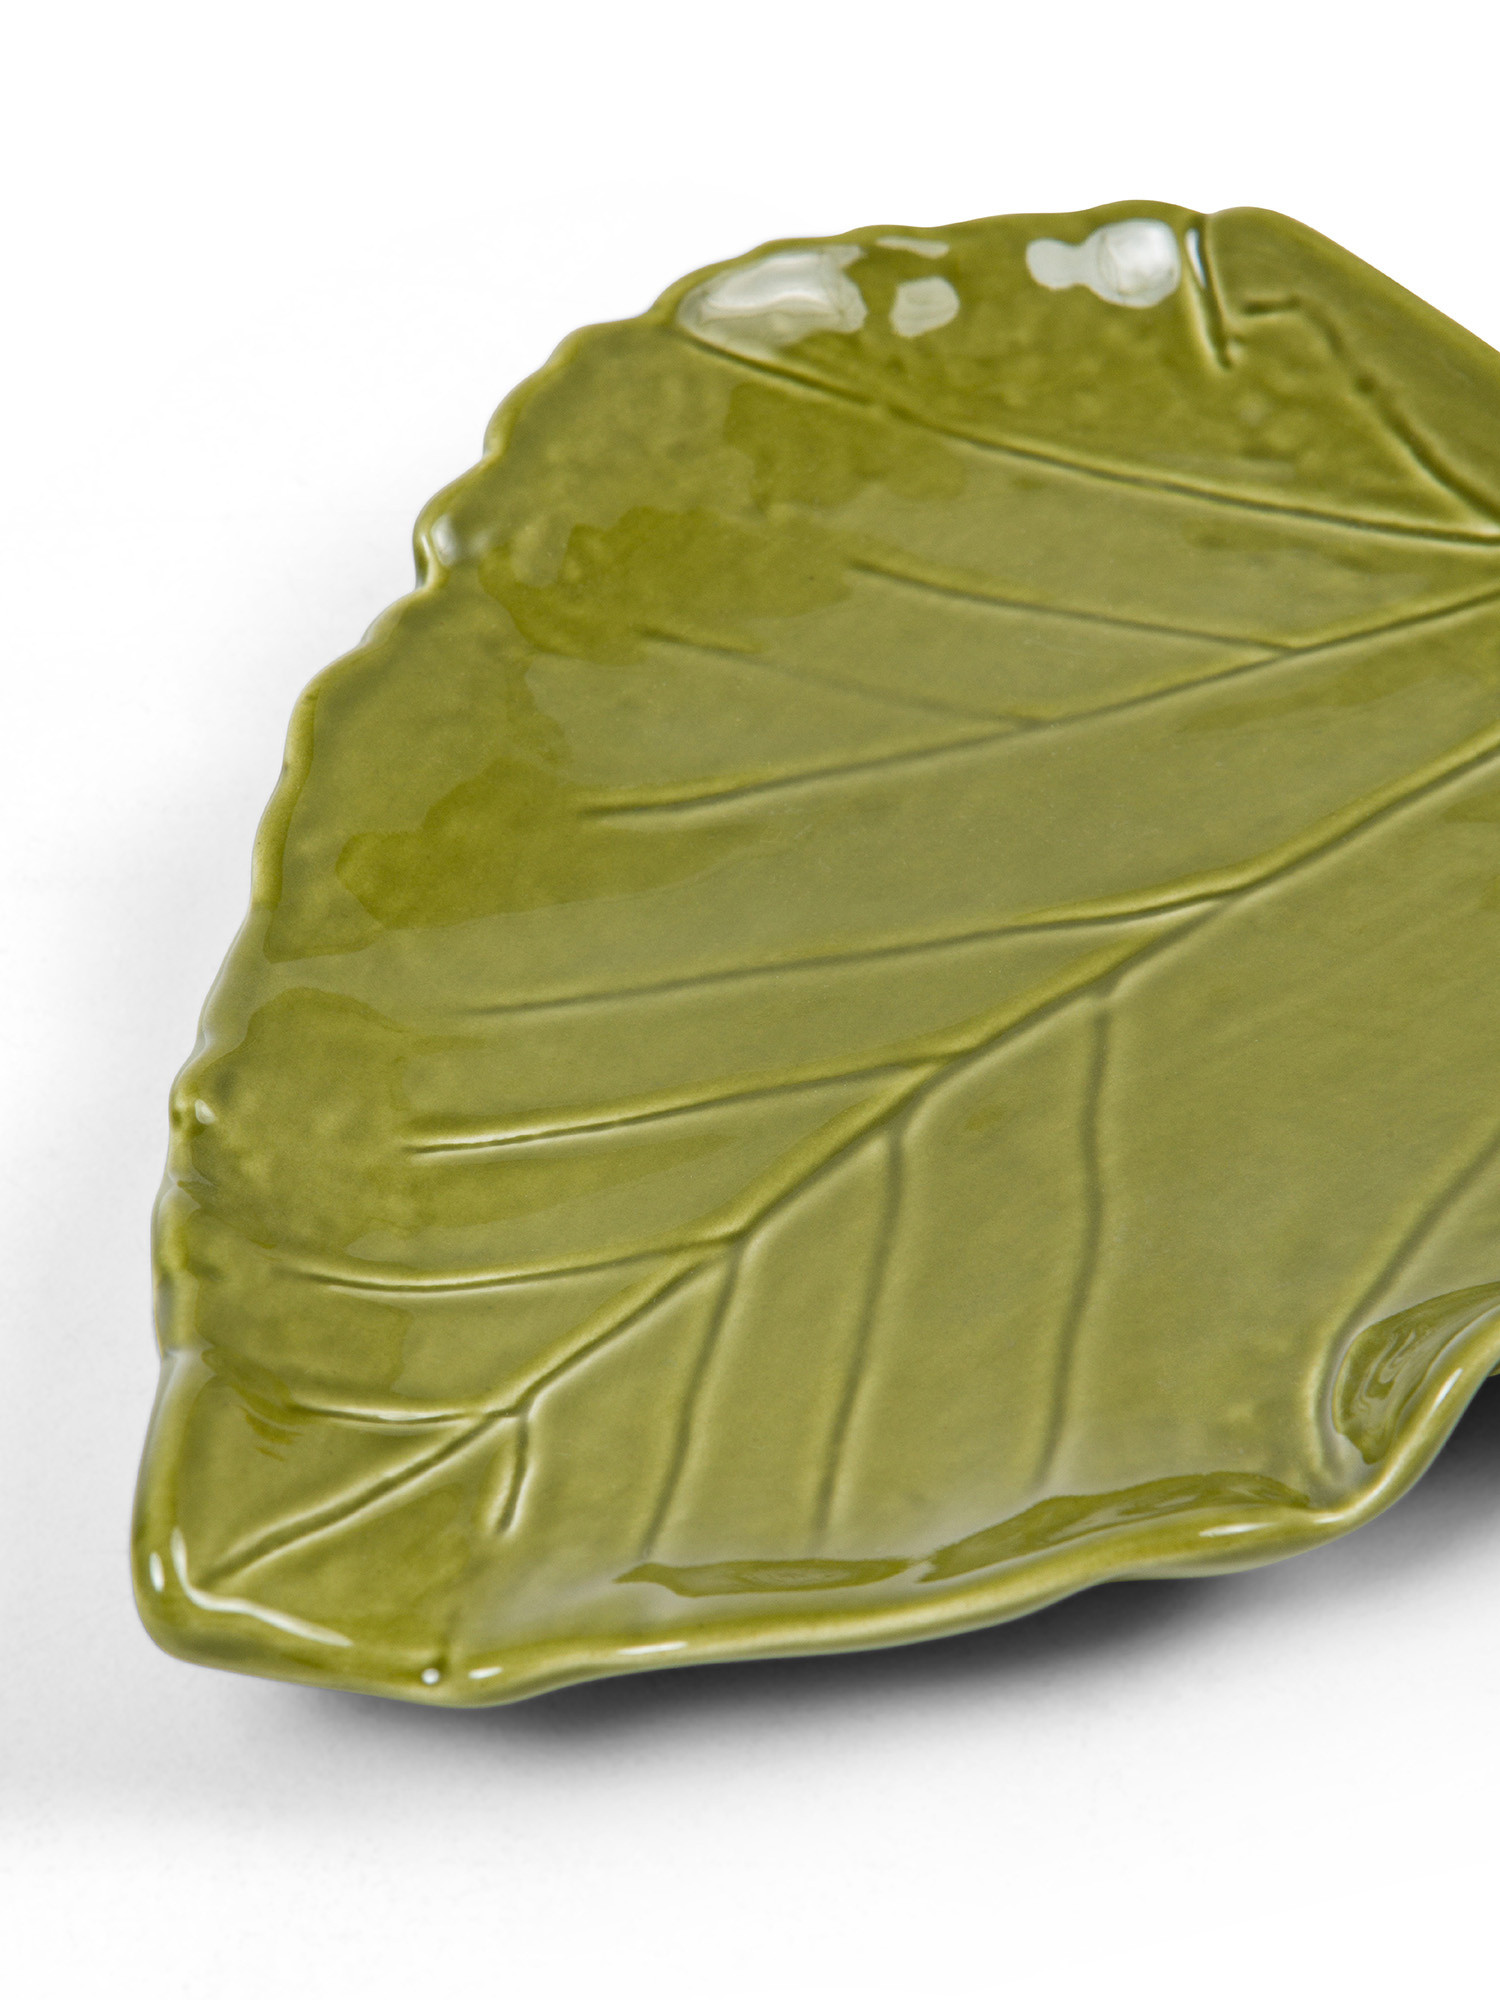 Foglia decorativa in ceramica, Verde, large image number 1